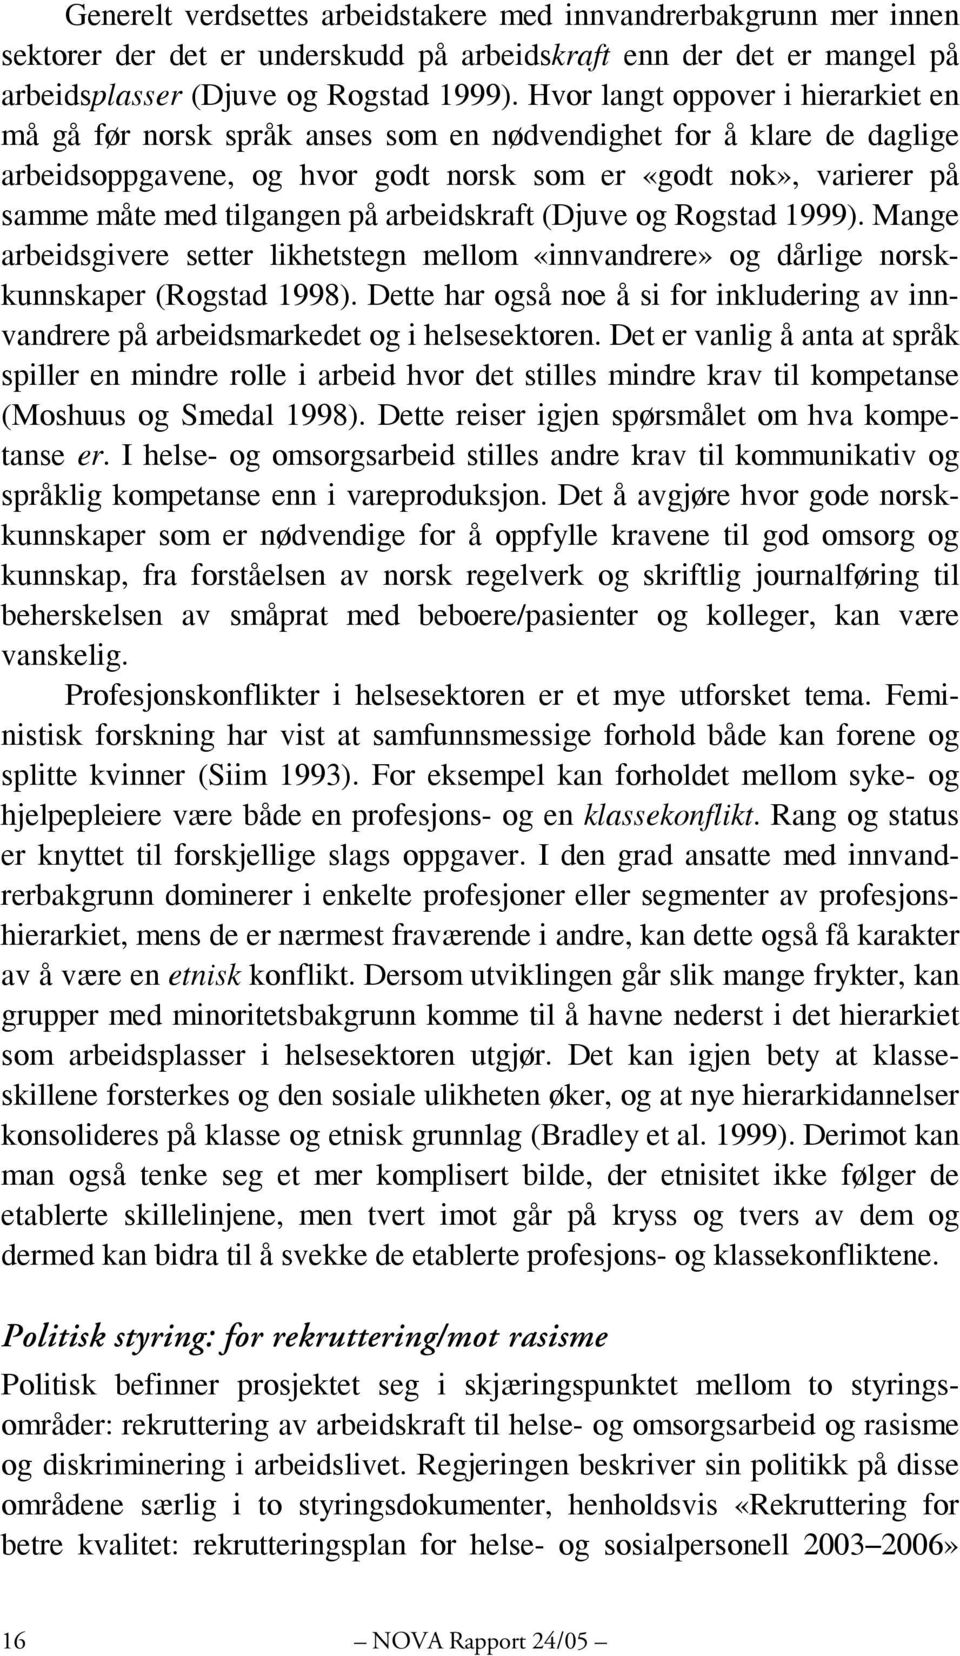 på arbeidskraft (Djuve og Rogstad 1999). Mange arbeidsgivere setter likhetstegn mellom «innvandrere» og dårlige norskkunnskaper (Rogstad 1998).